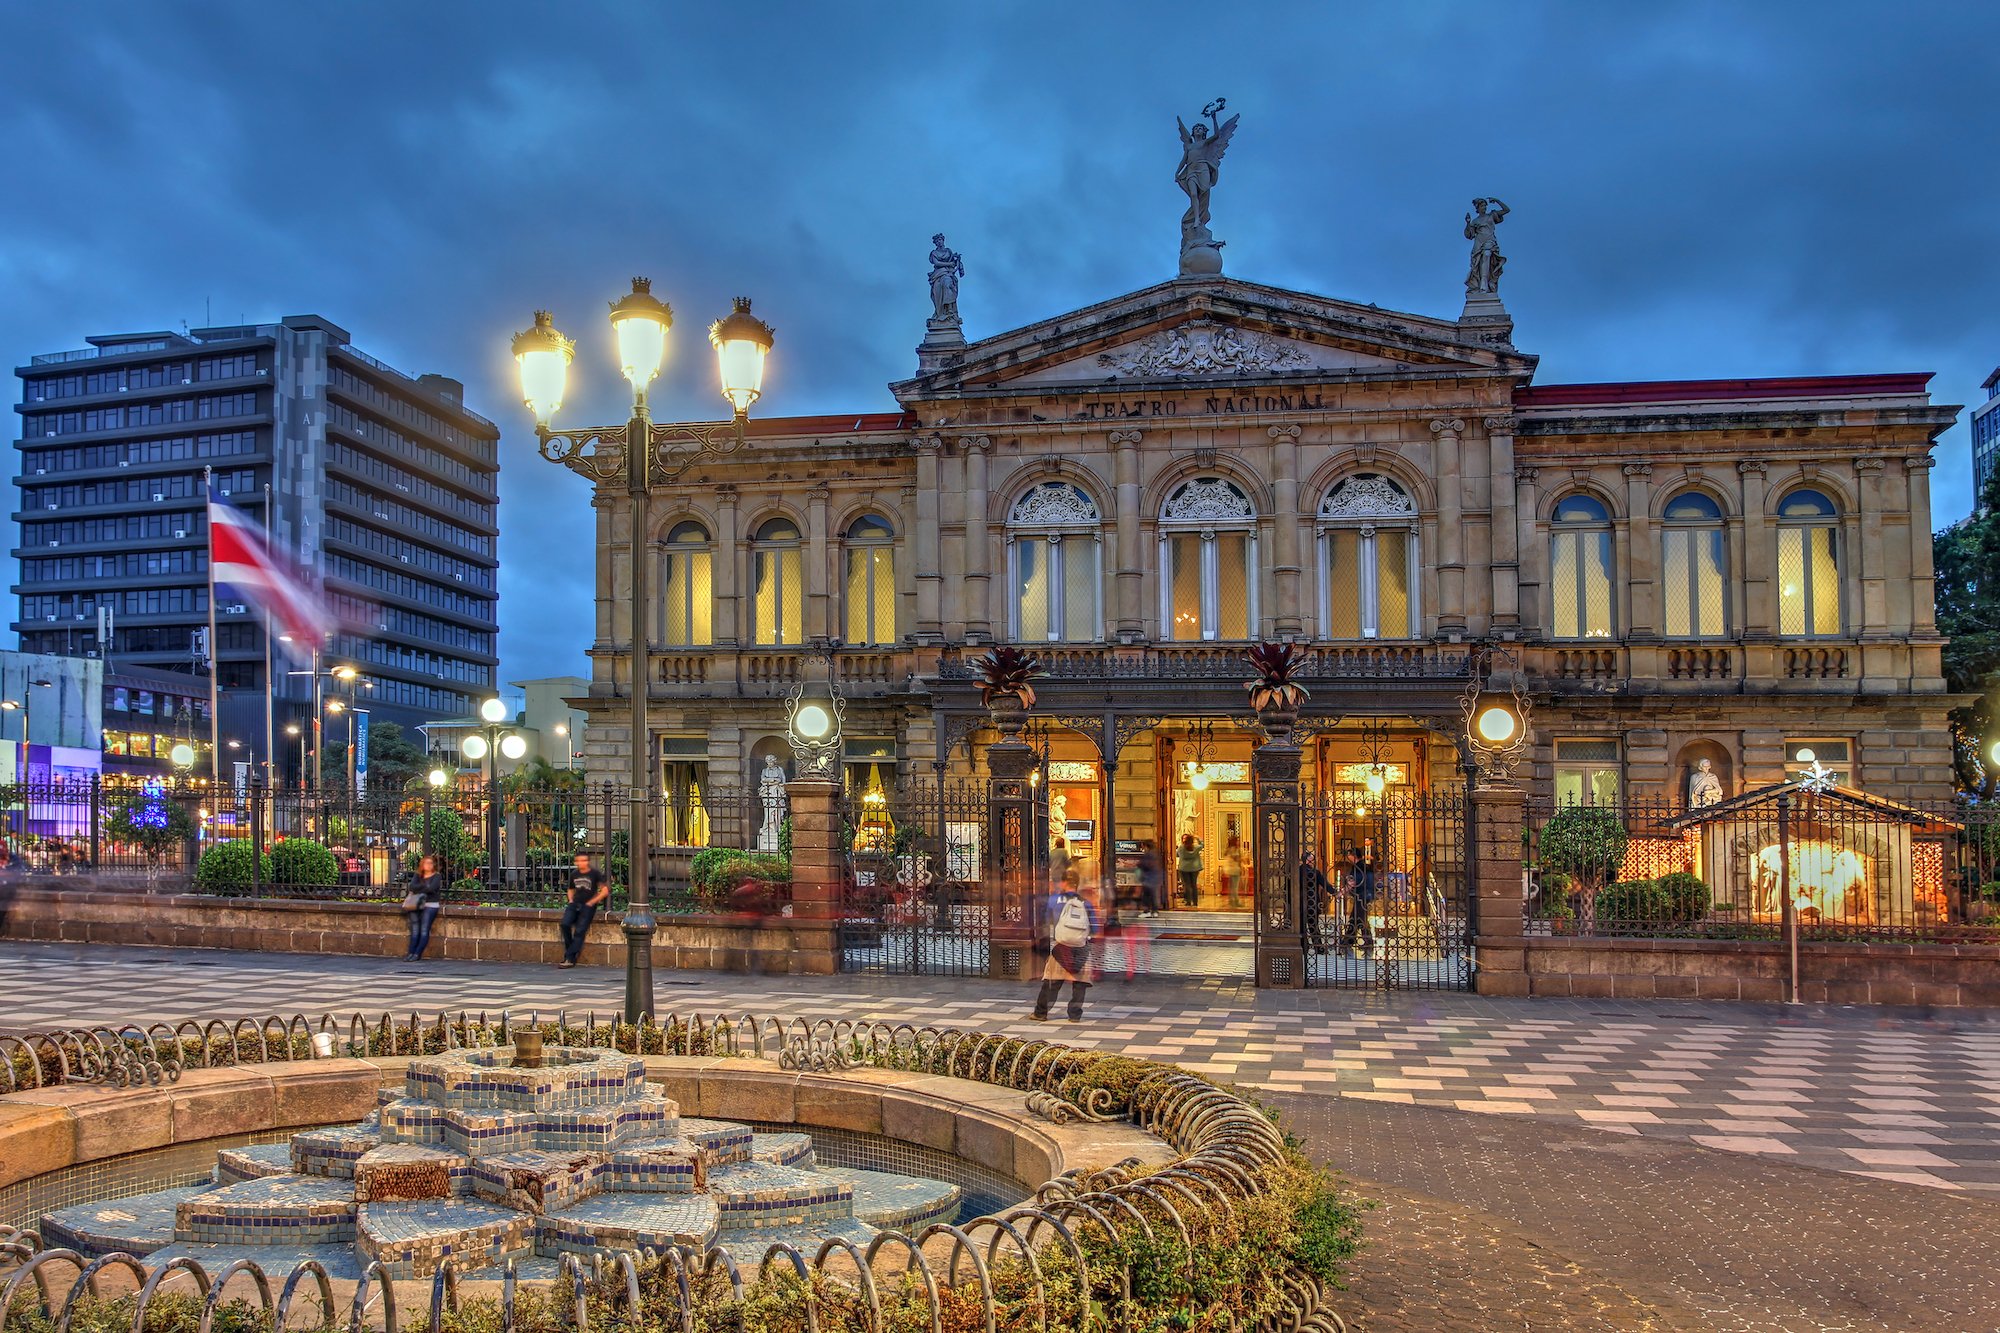 San Jose Costa Rica Design Guide - Rich Historic Architecture